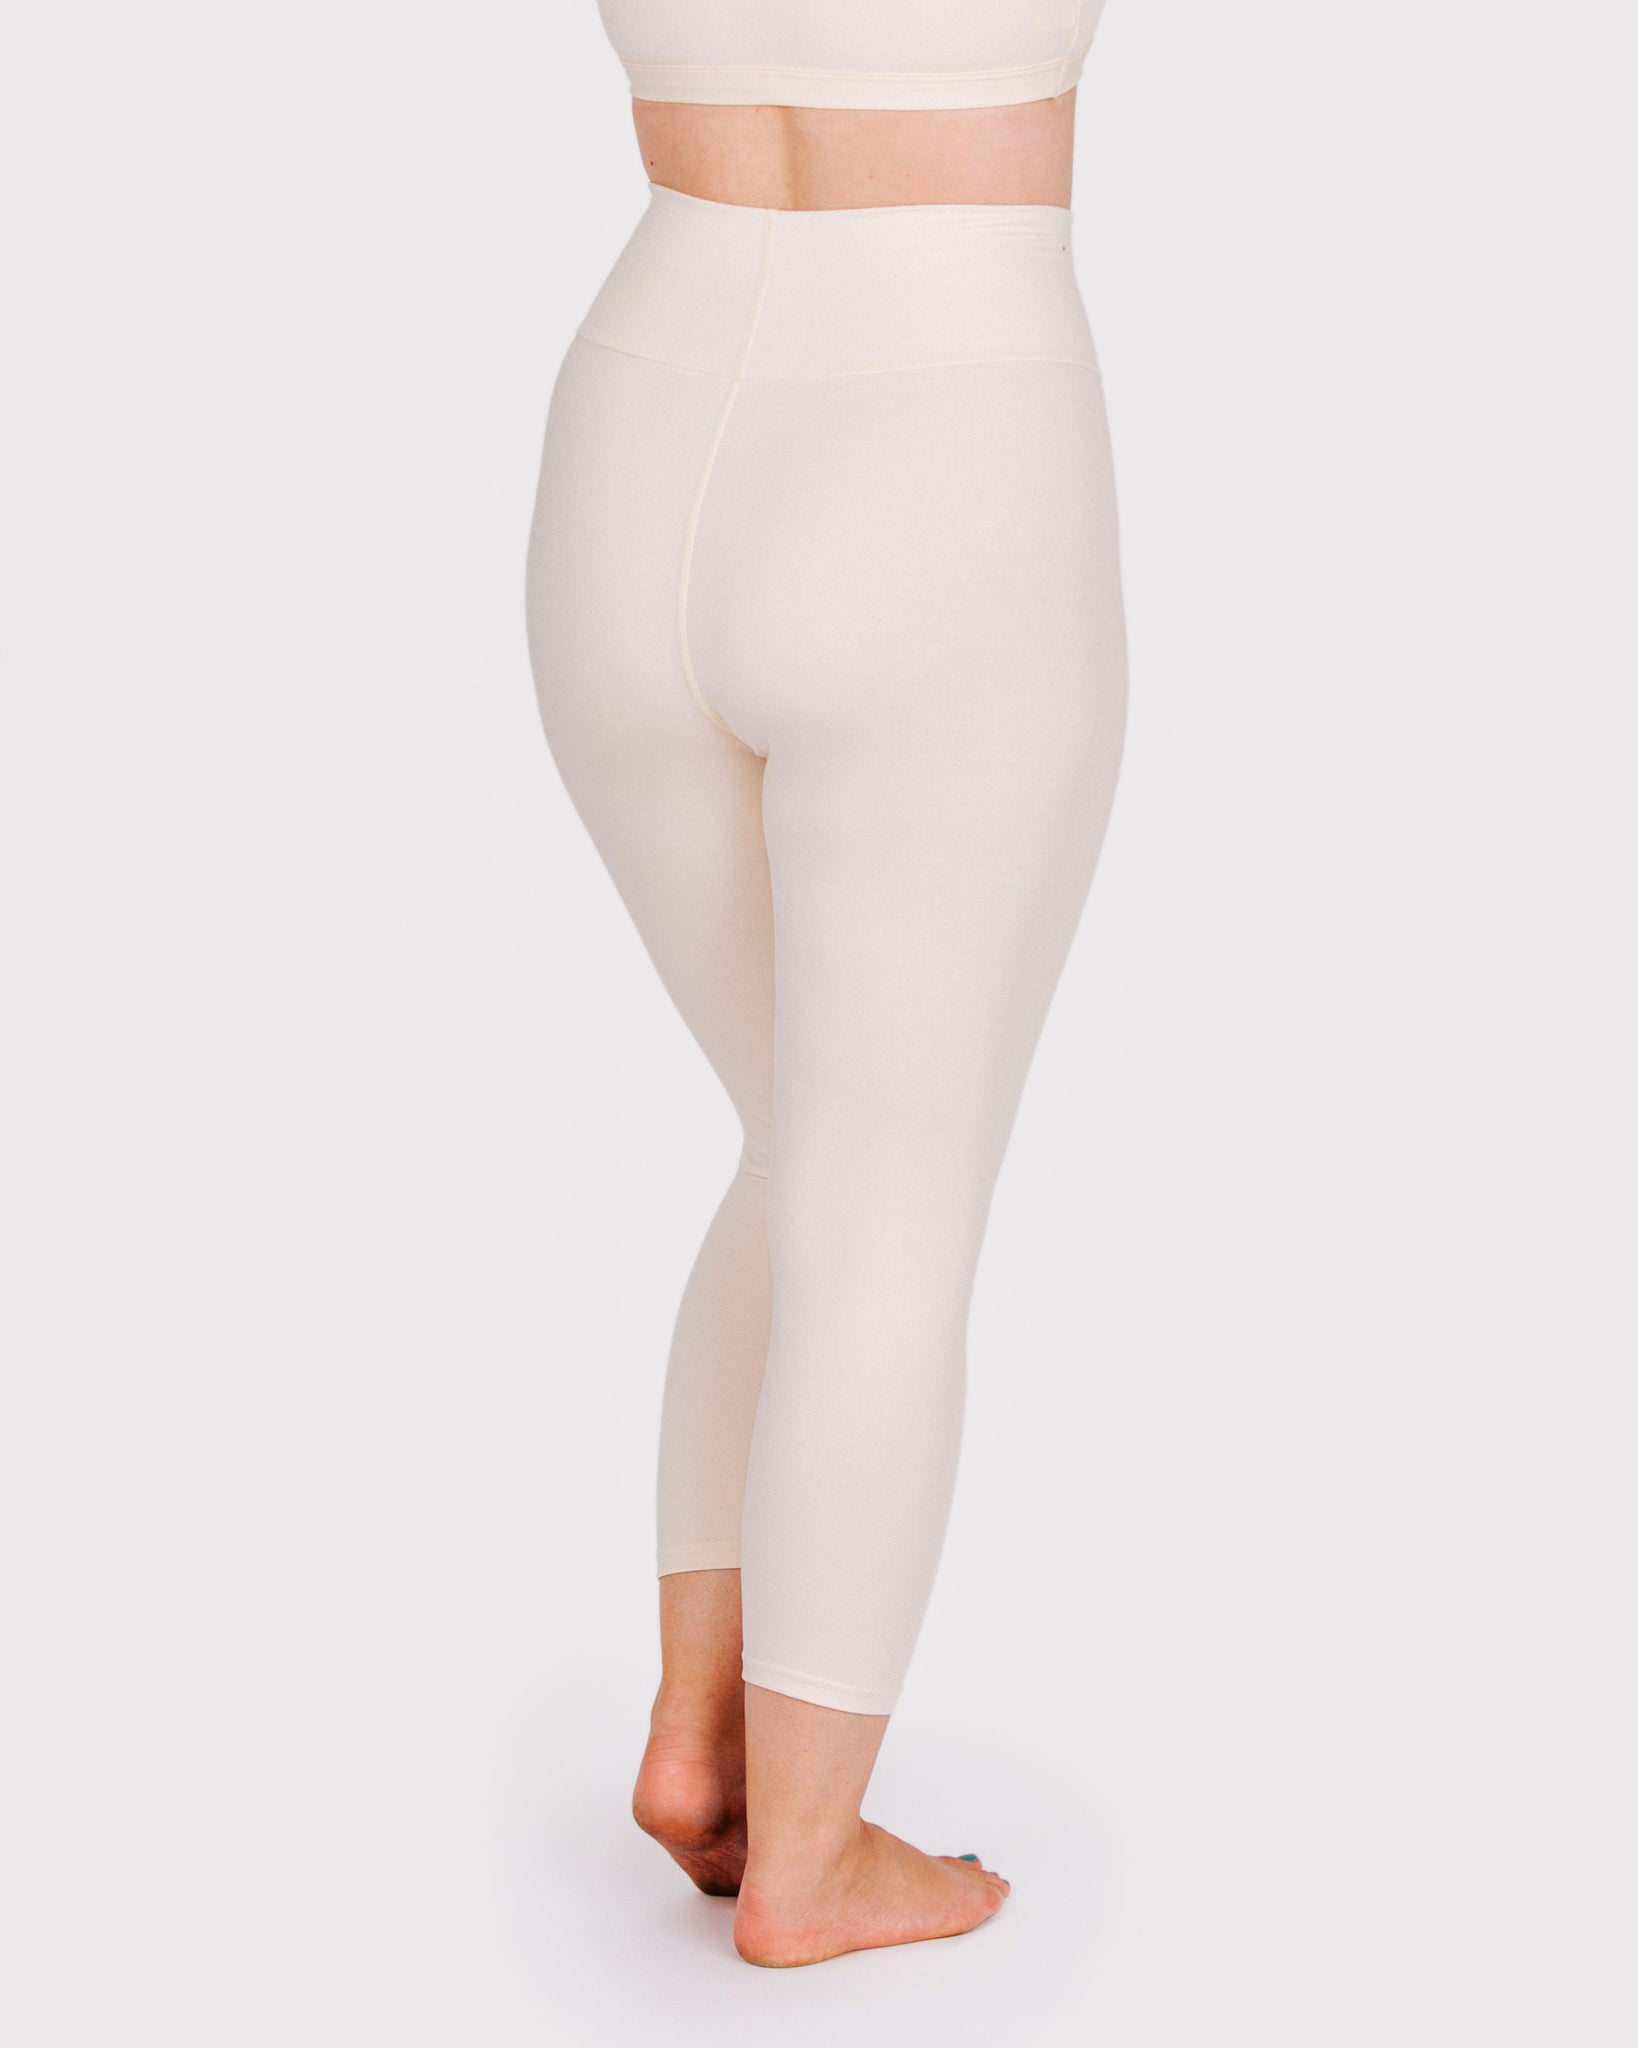 Buy Women Basic Solid Color Cotton Capri Length Leggings White at